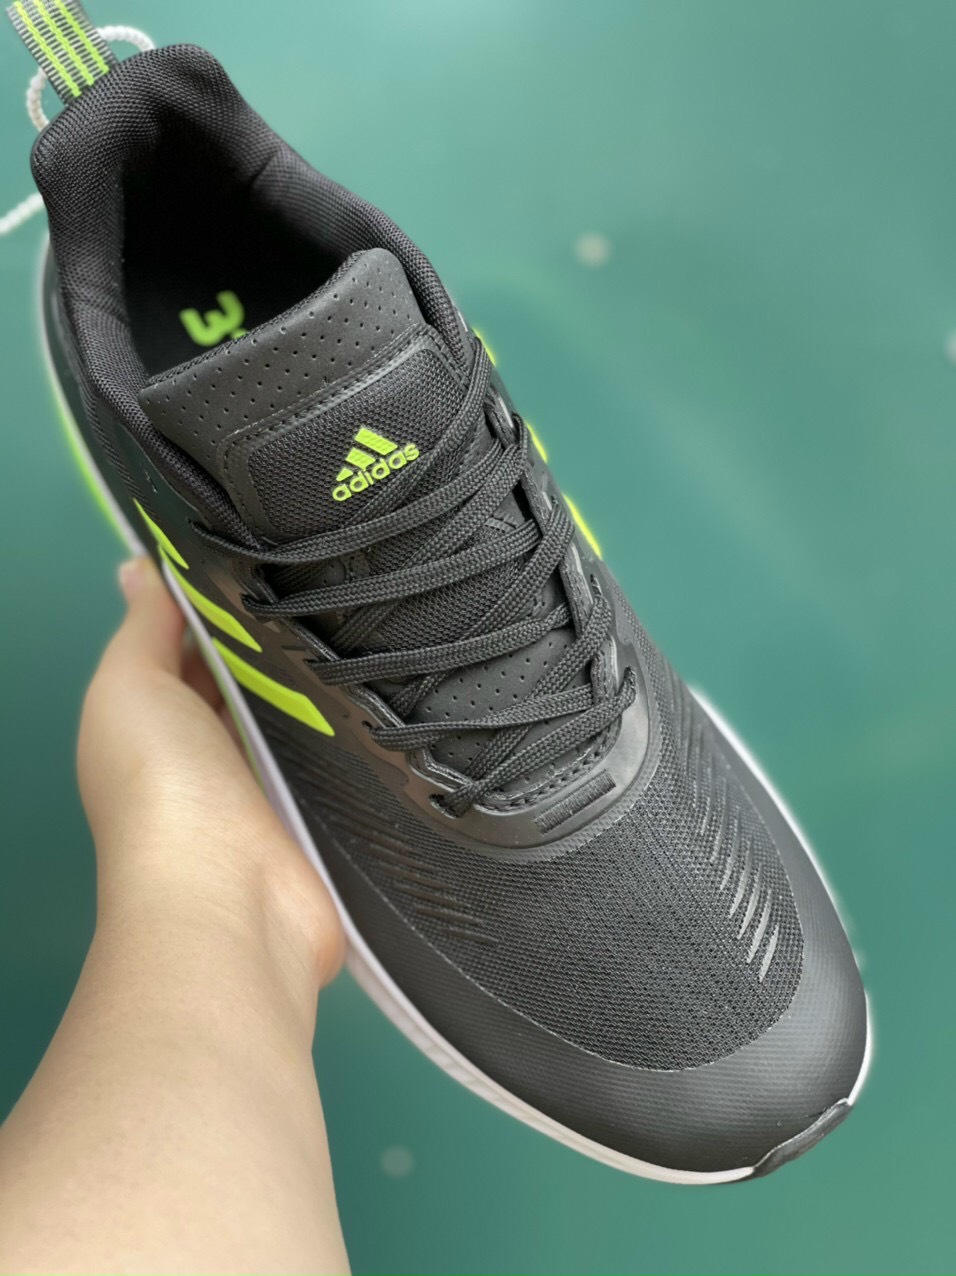 Giày Adidas Alphabounce 2022 Đen Sọc Xanh Rep 1:1